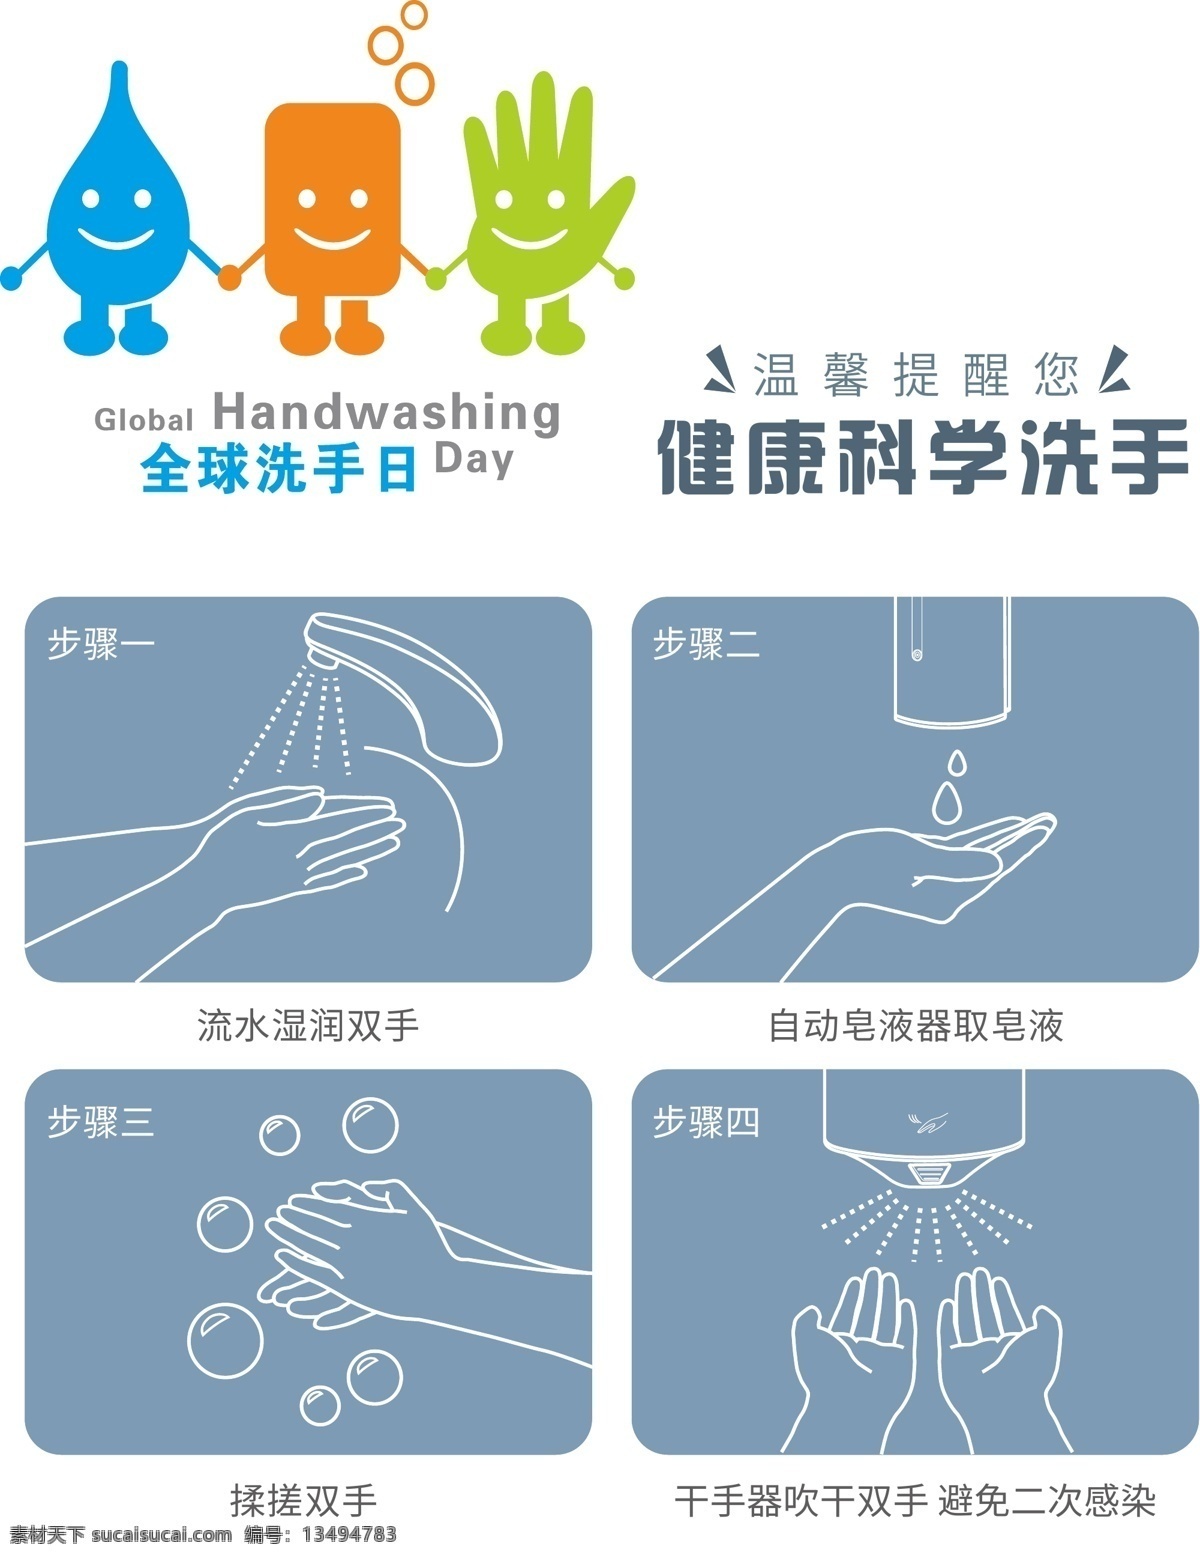 全球 洗手 日 健康 科学 全球洗手日 健康科学洗手 洗手日 公益